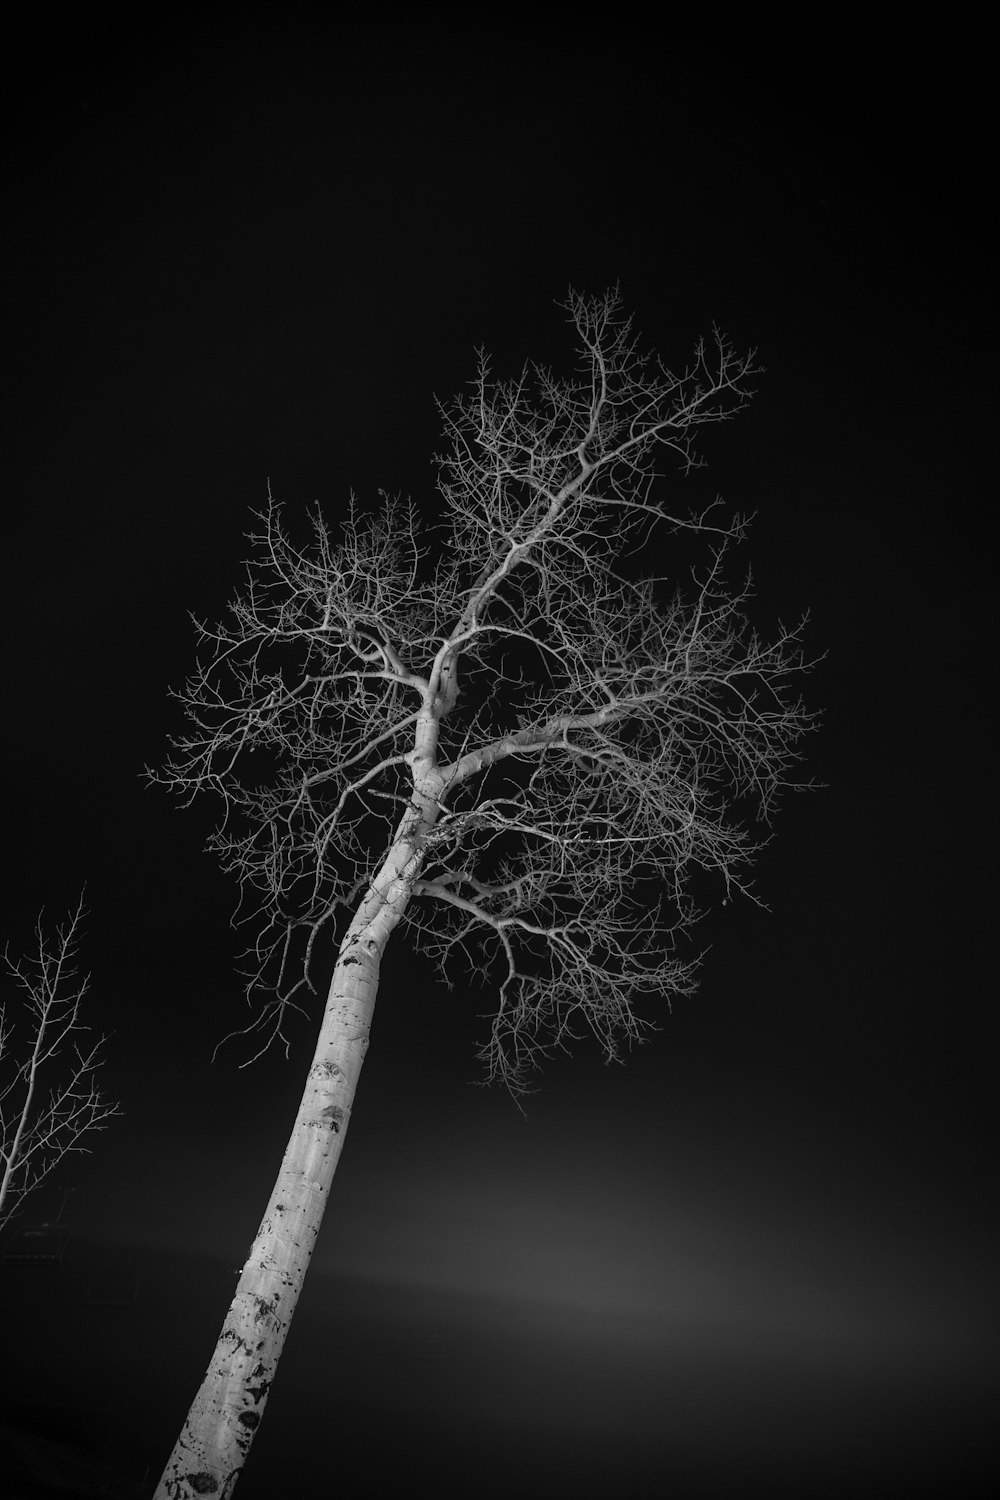 잎이 없는 나무의 회색조 사진